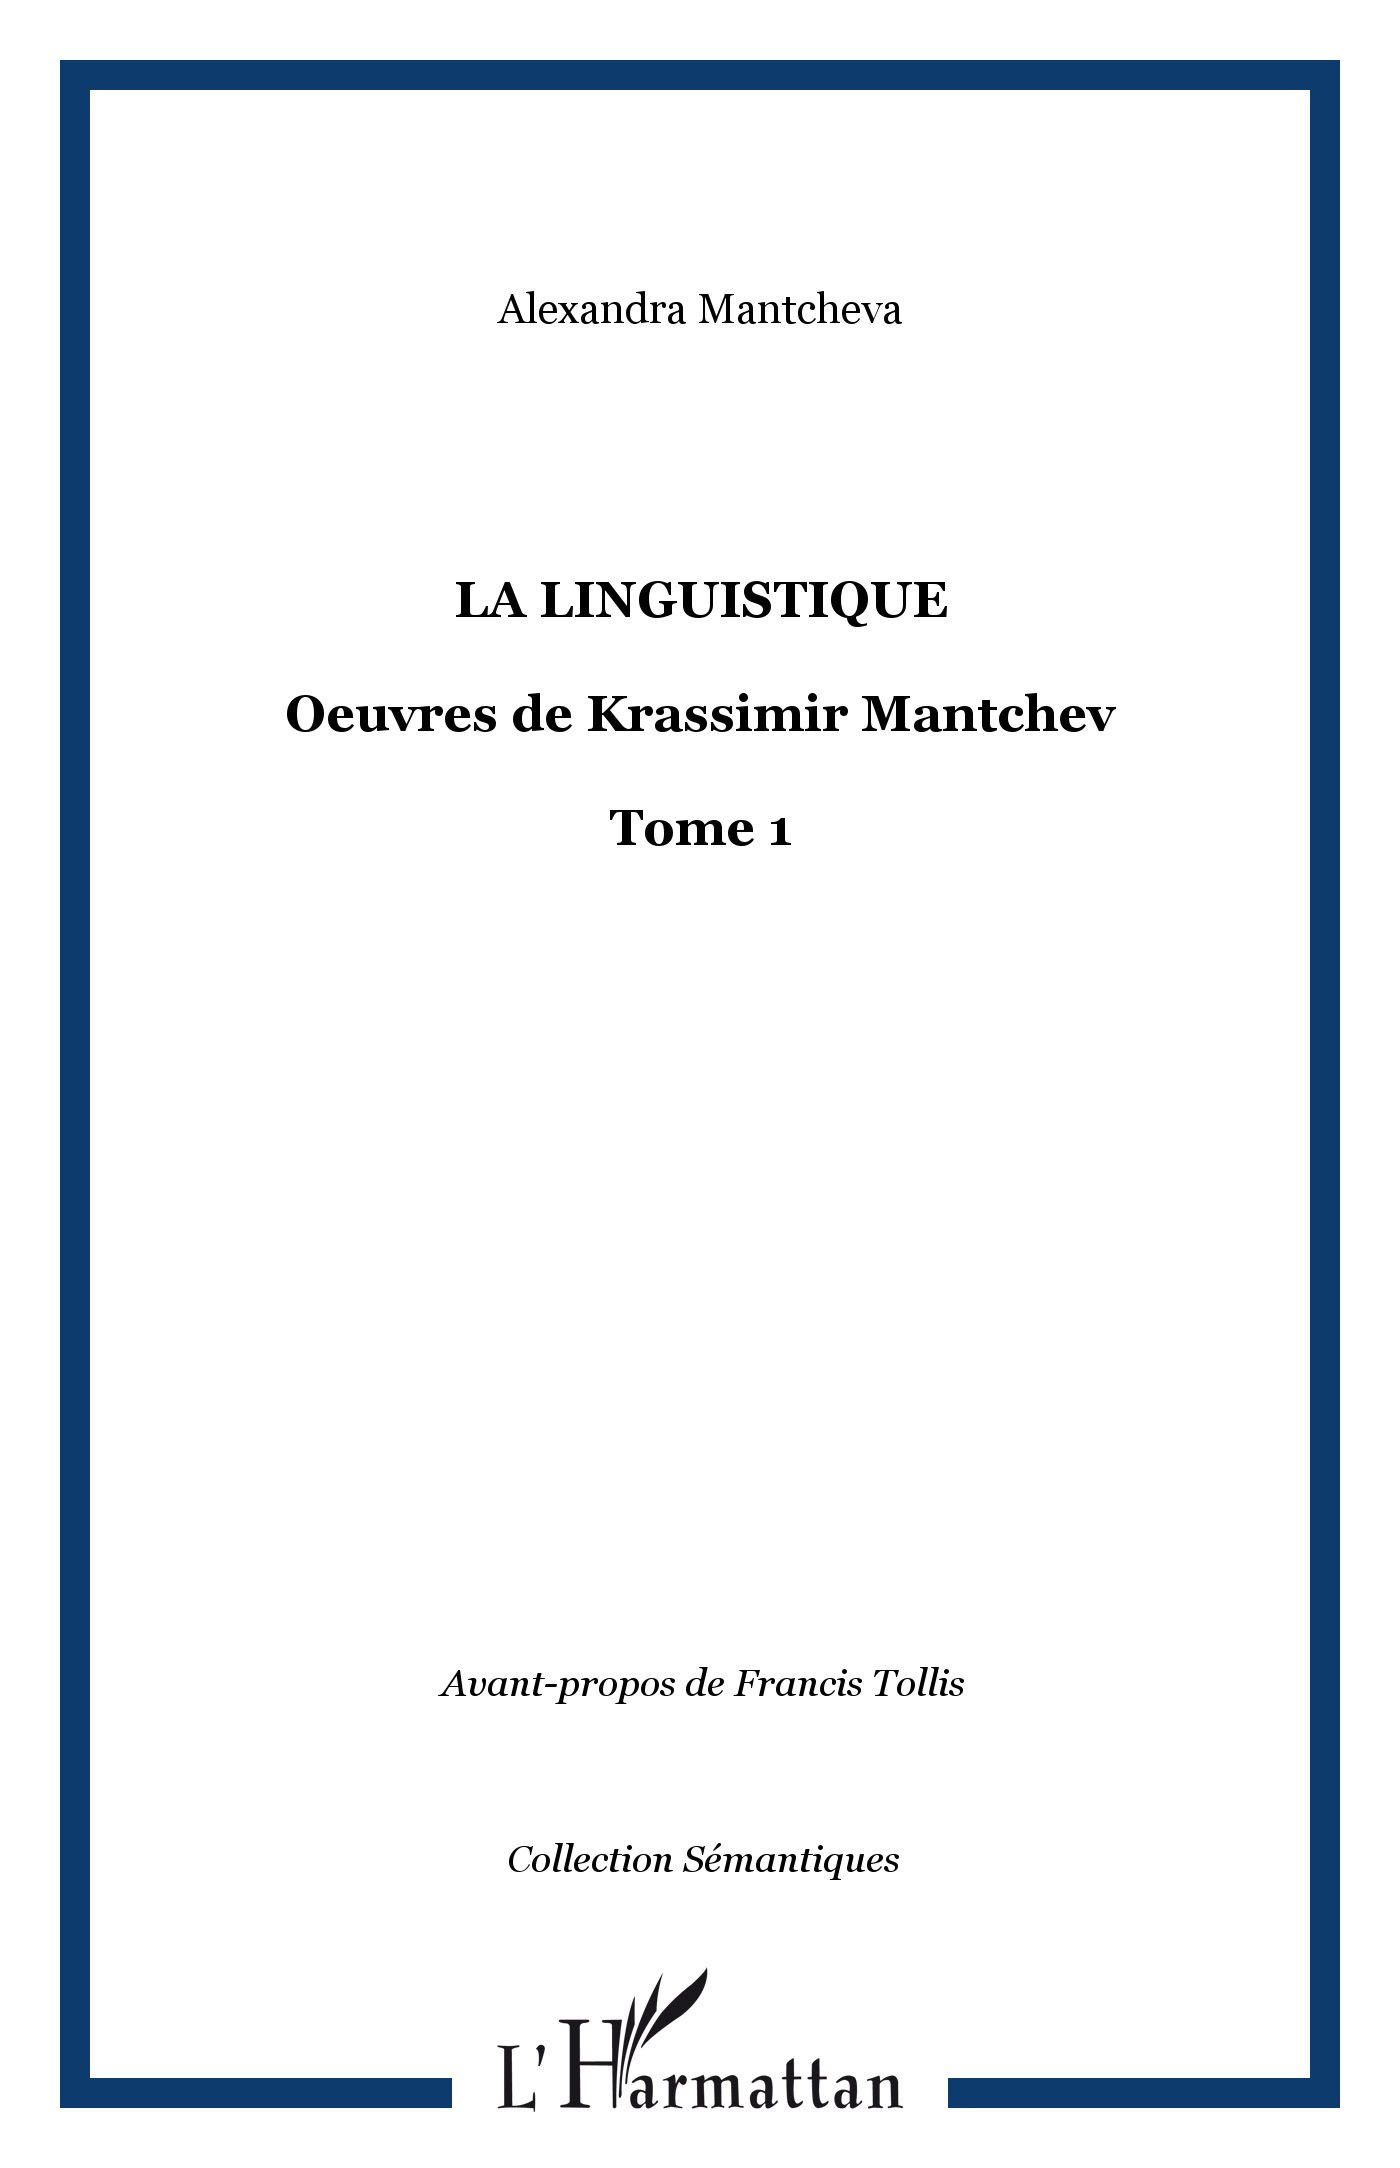 La Linguistique, Oeuvres de Krassimir Mantchev - Tome 1 (9782747560184-front-cover)